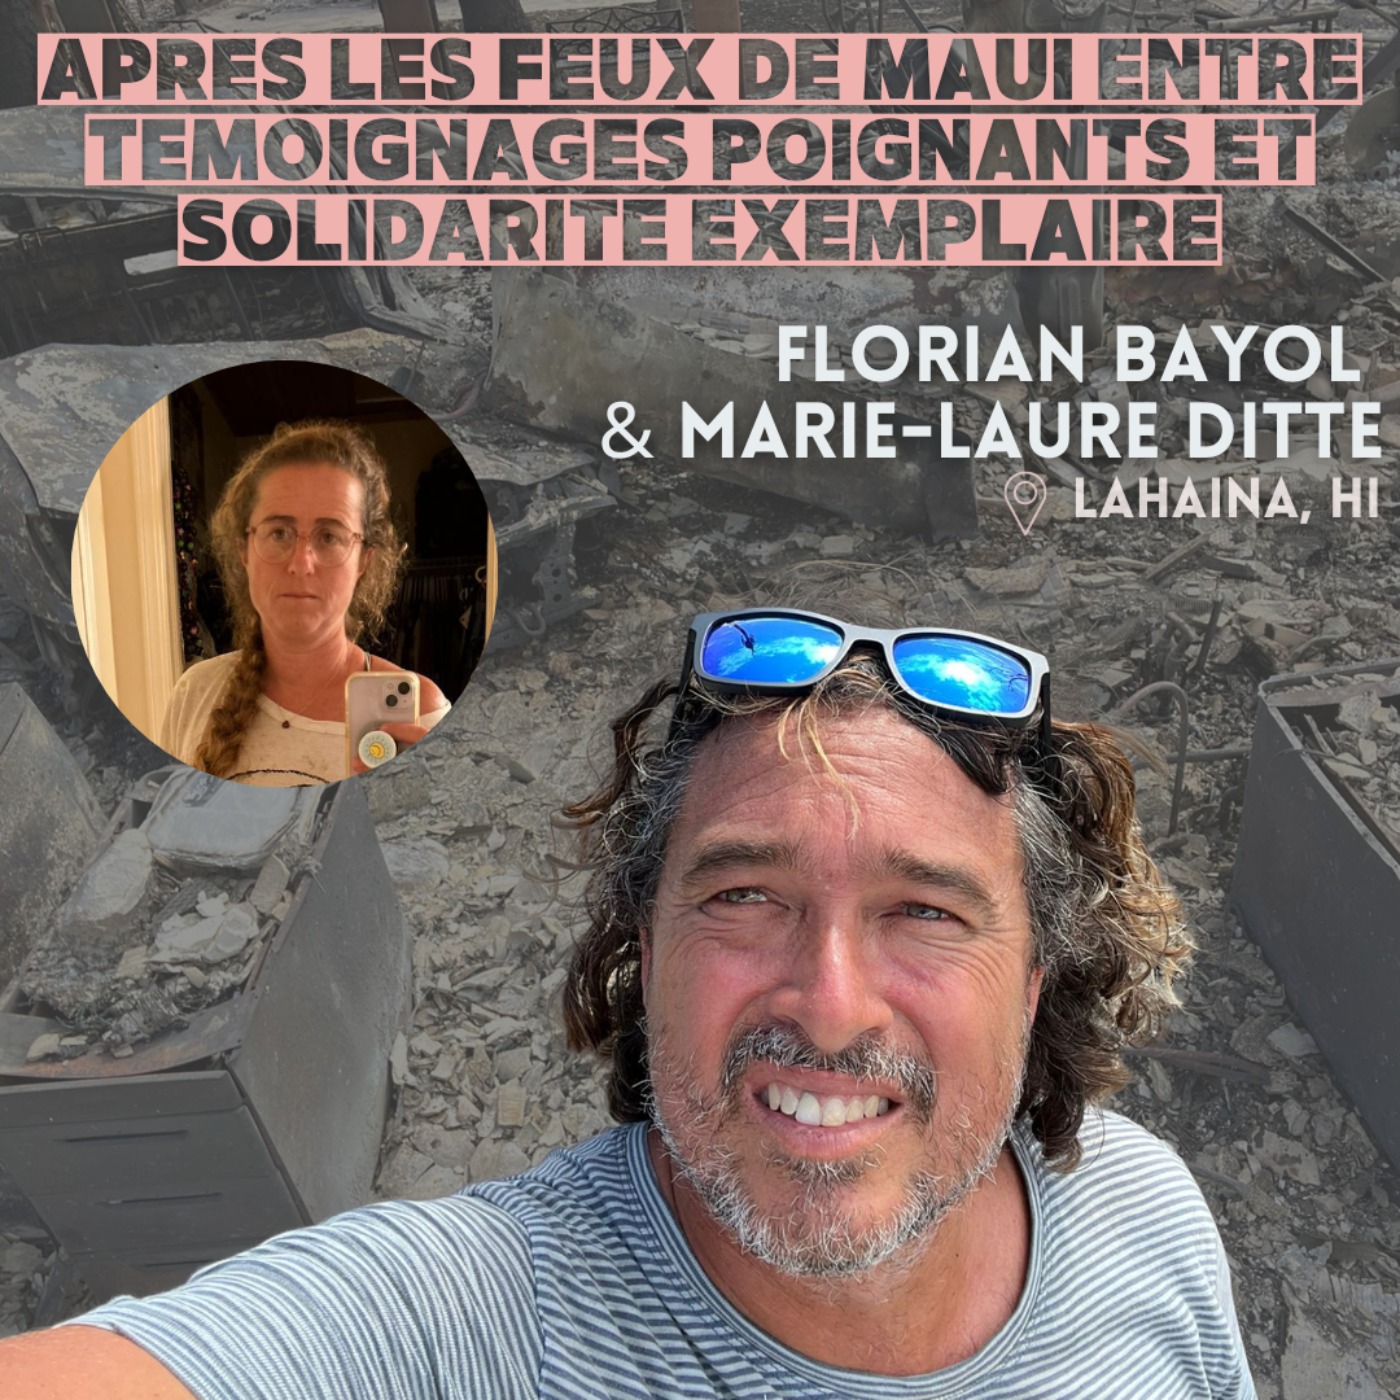 Après les feux de Maui (Hawaii) : L’histoire de Florian Bayol et Marie-Laure Ditte, entre témoignages poignants et solidarité exemplaire